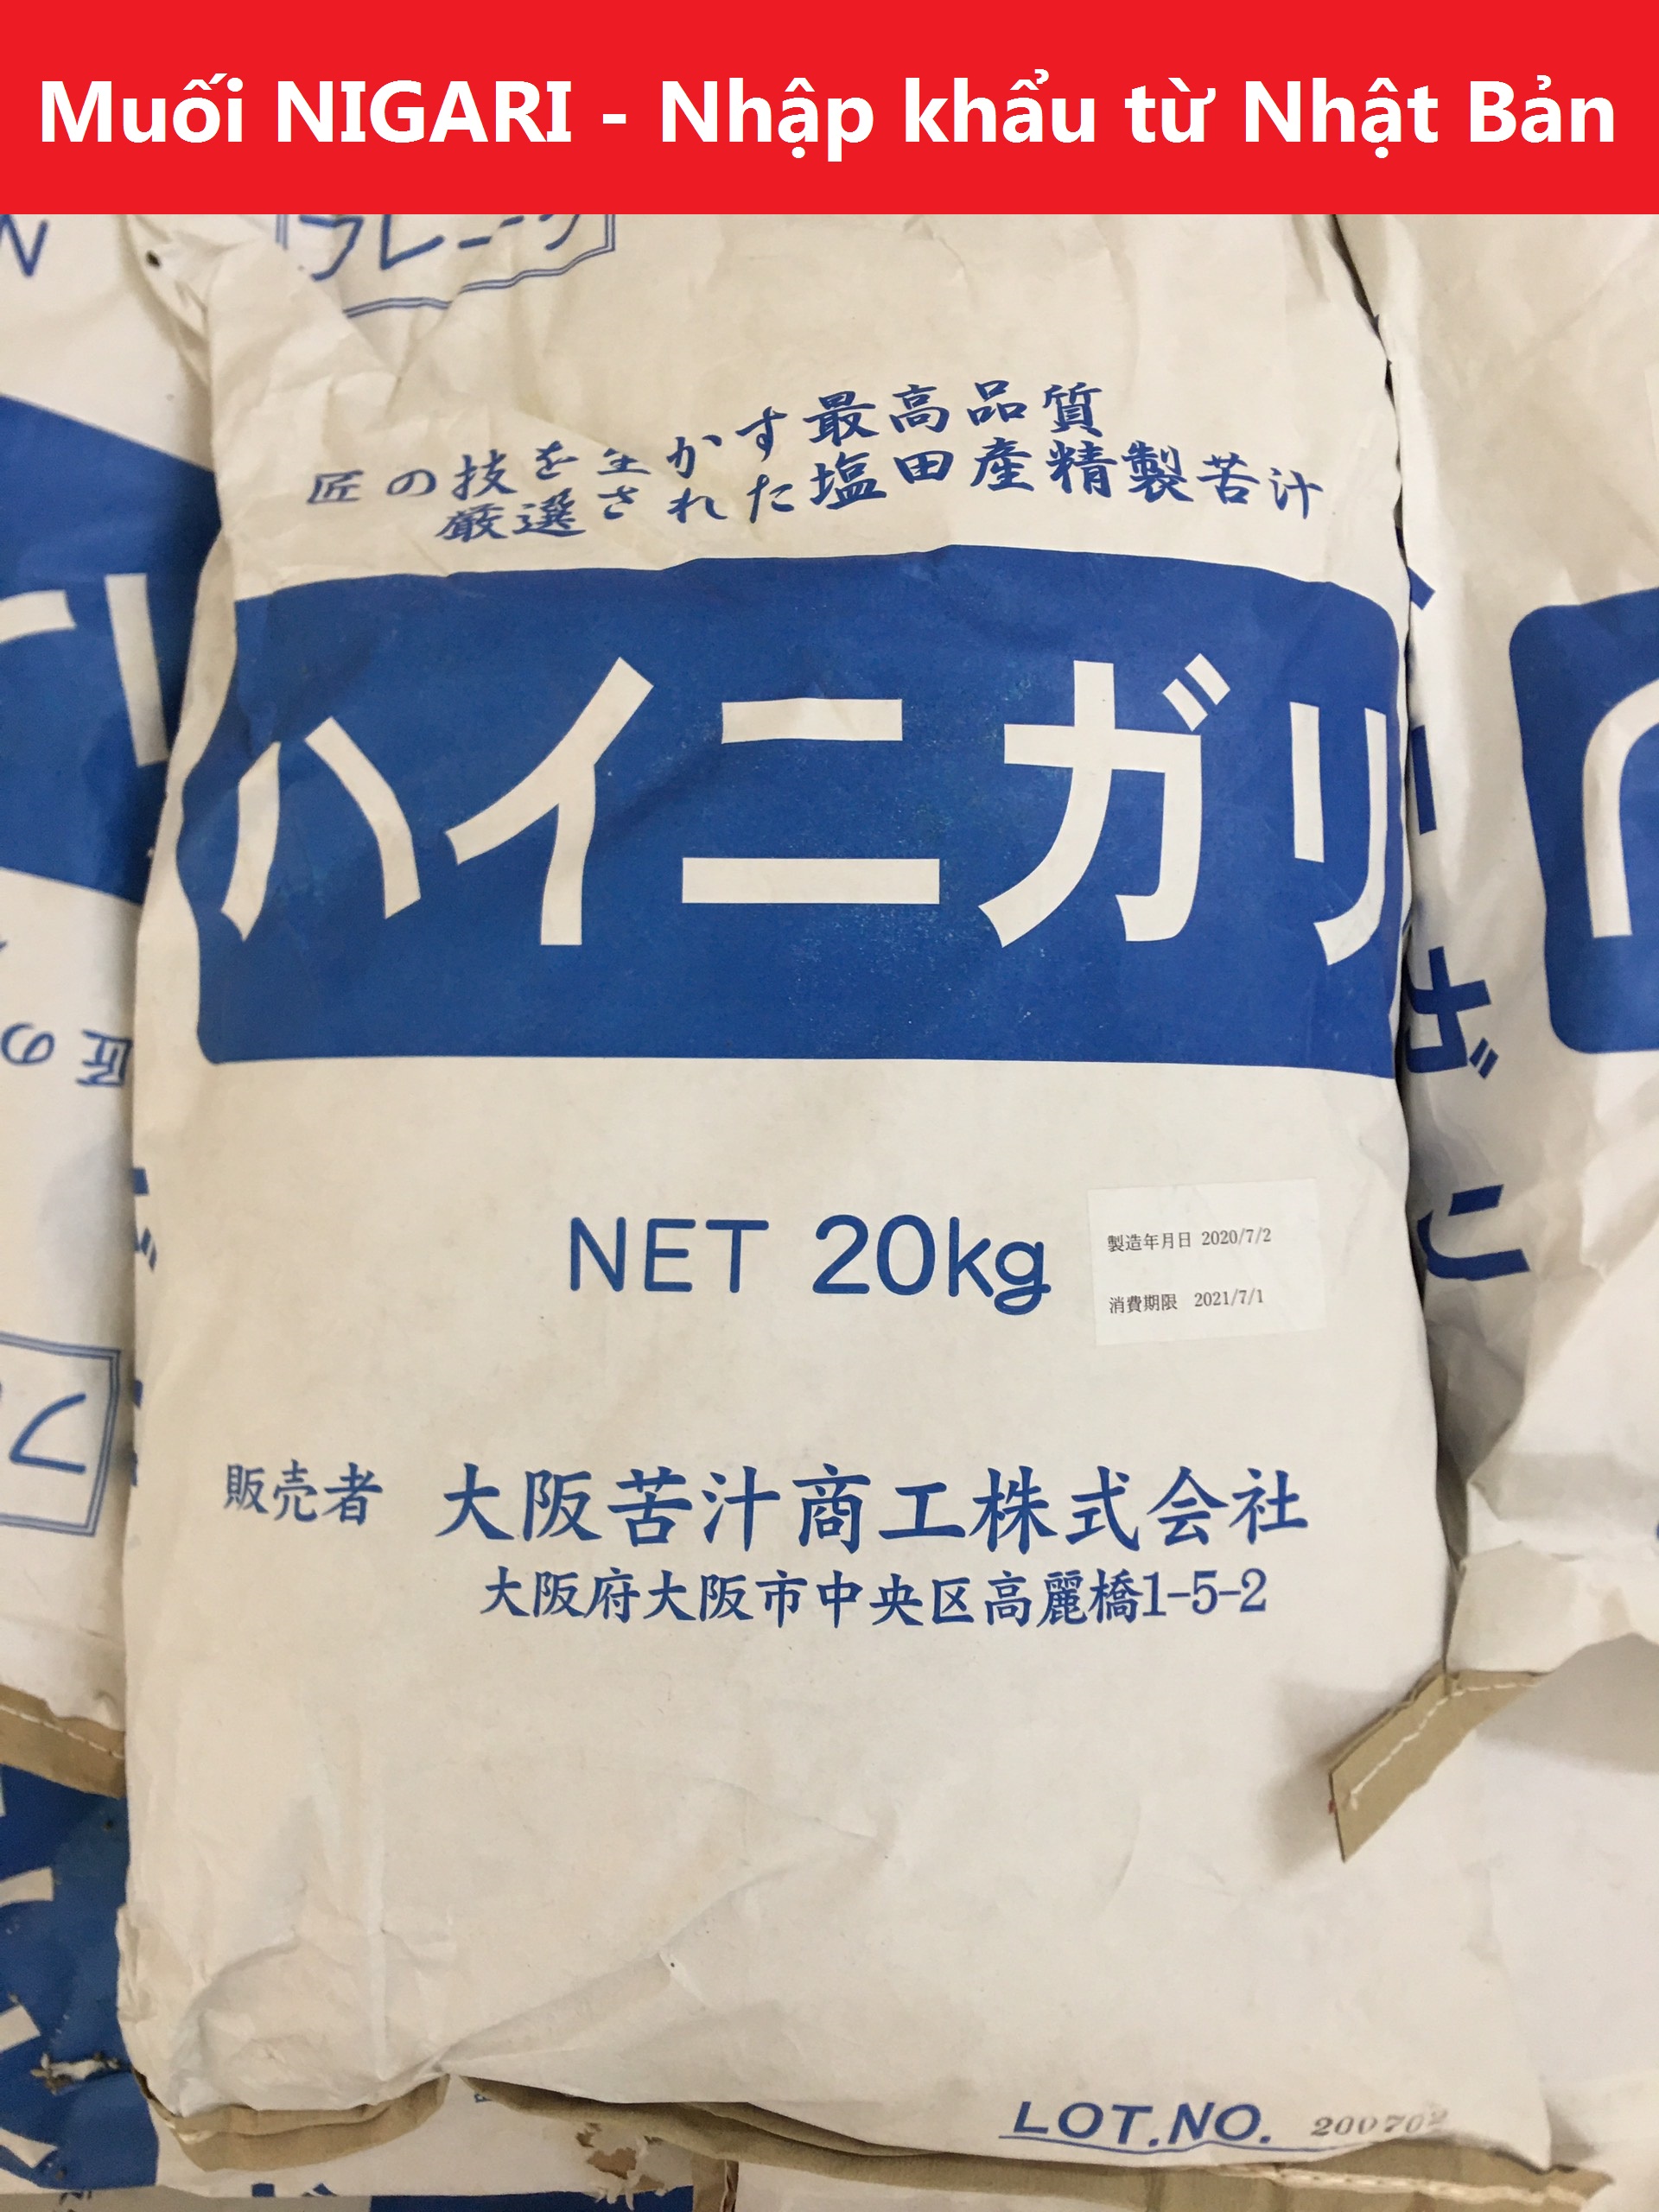 Muối NIGARI Nhật Bản bao 20kg làm đậu hũ nhanh đông ngon béo (Made in Japan)